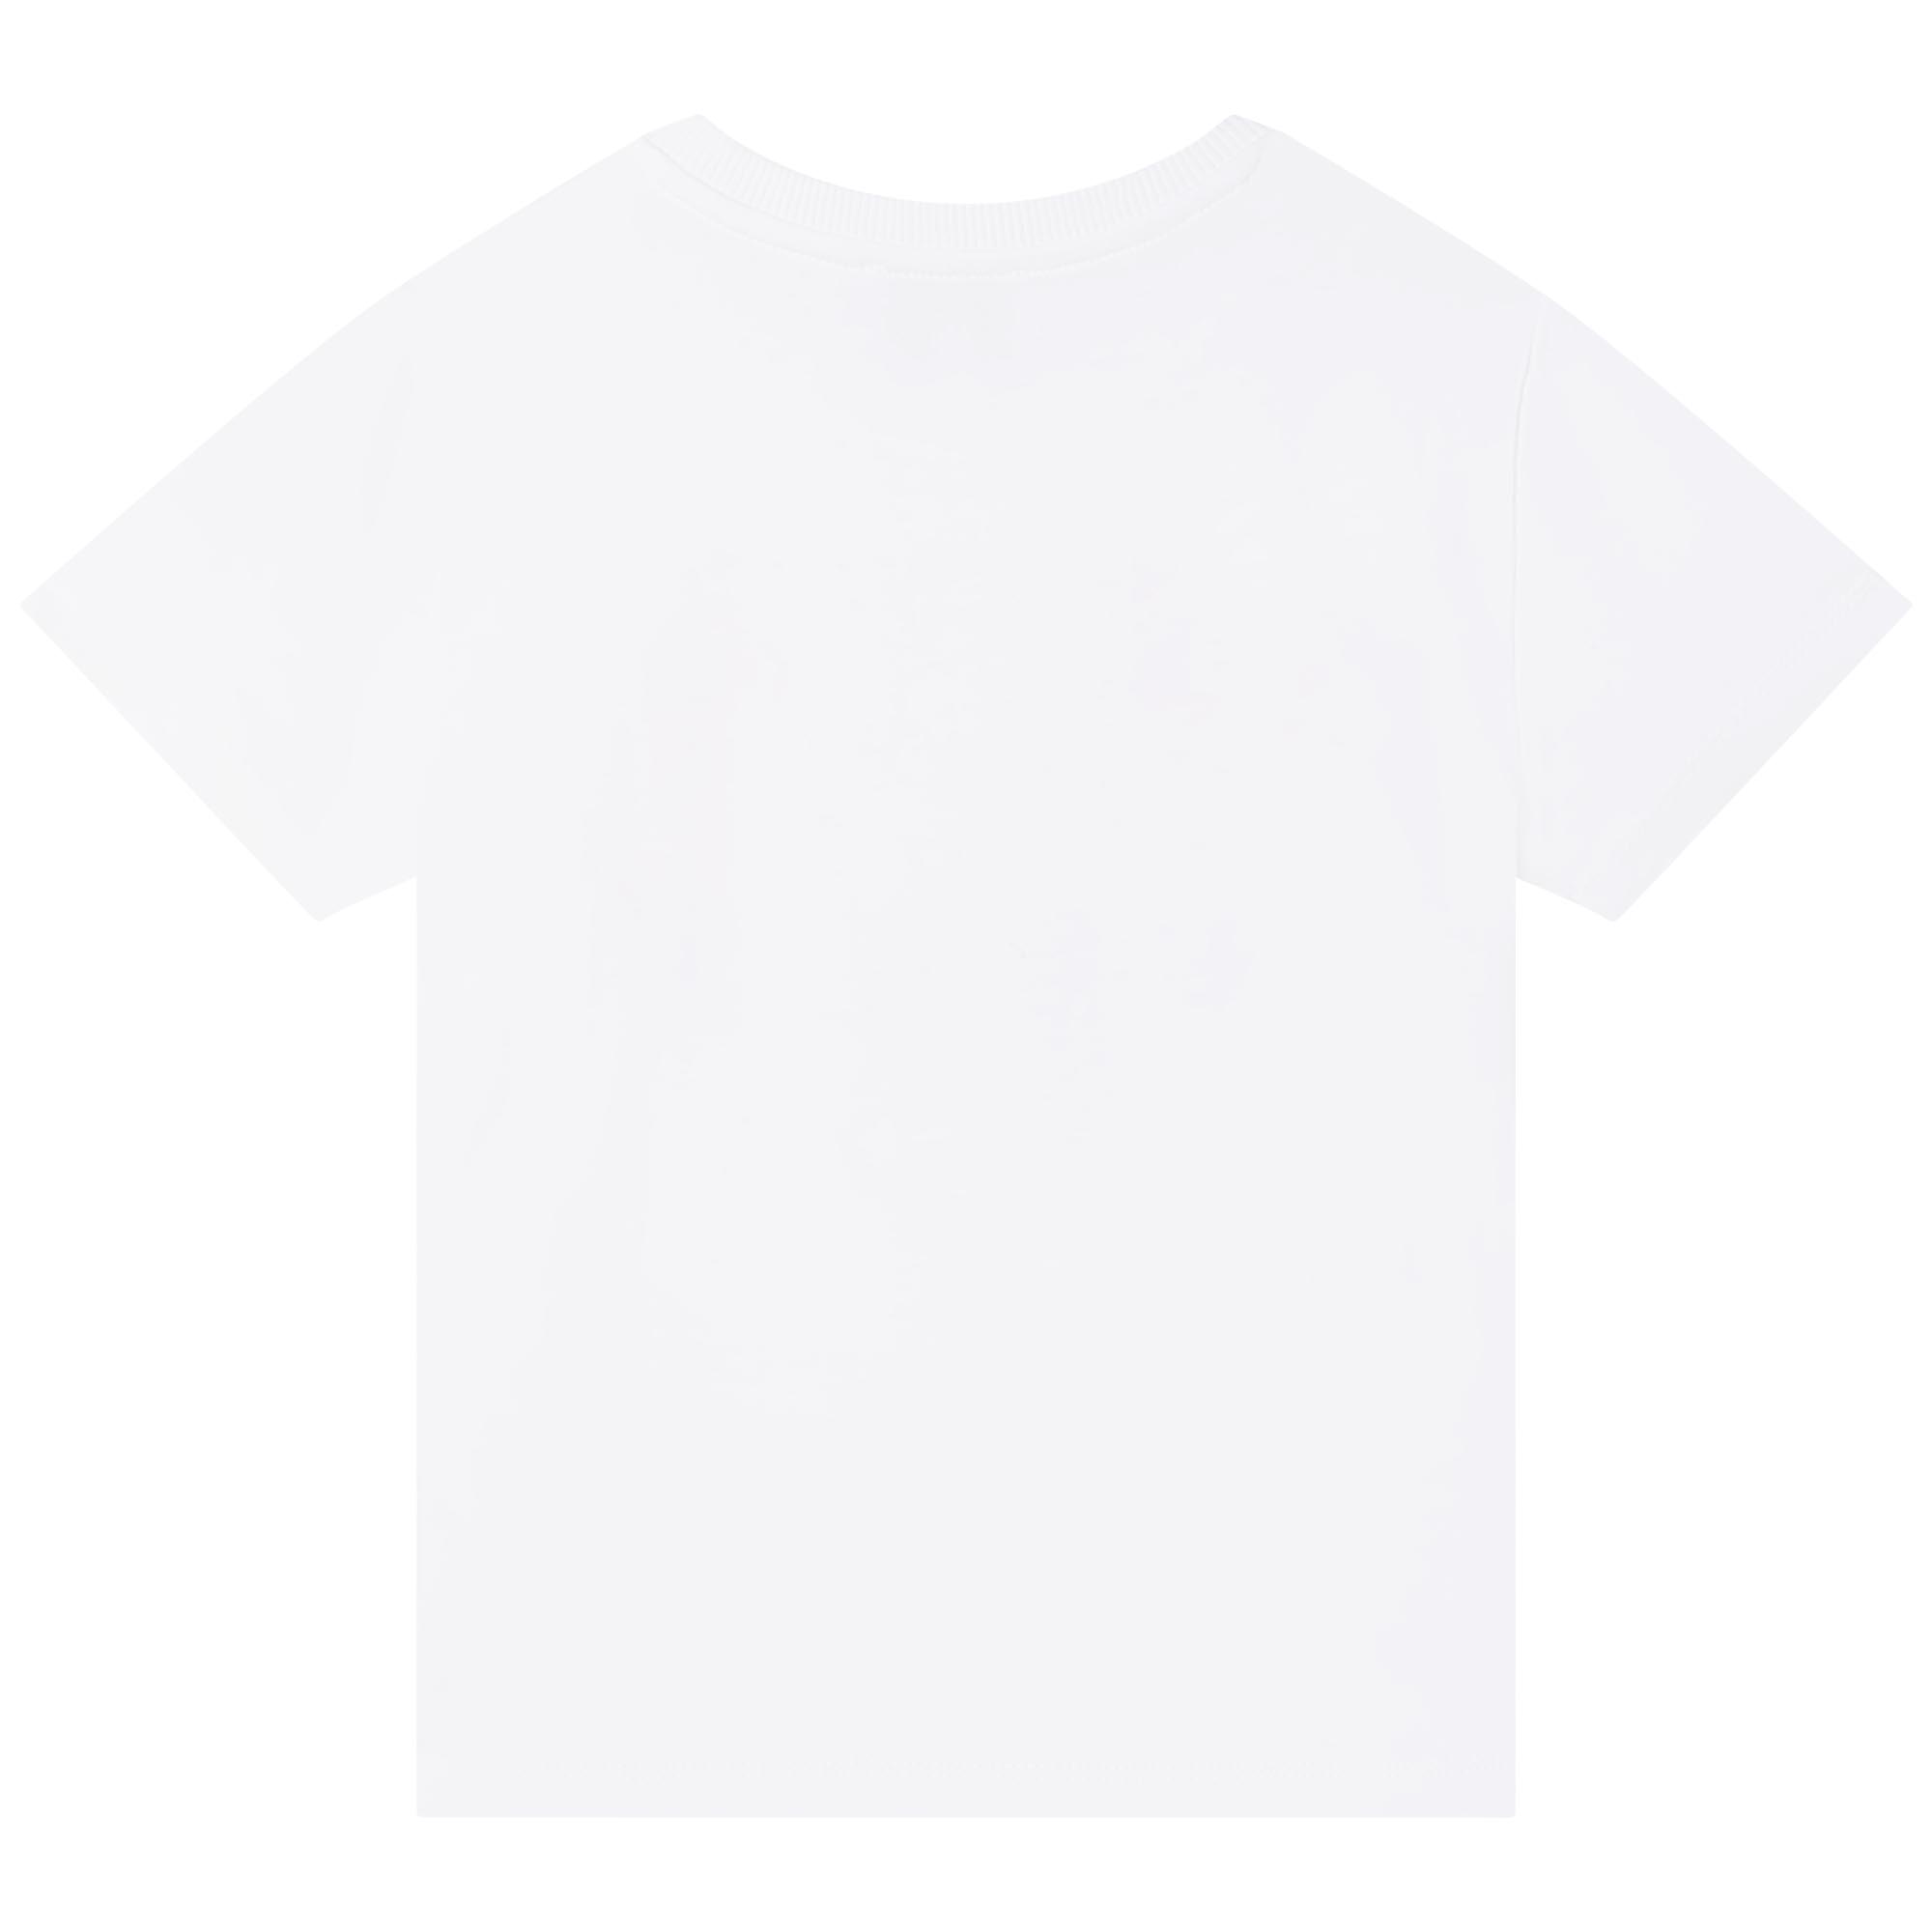 Short-Sleeve T-Shirt KENZO KIDS for GIRL